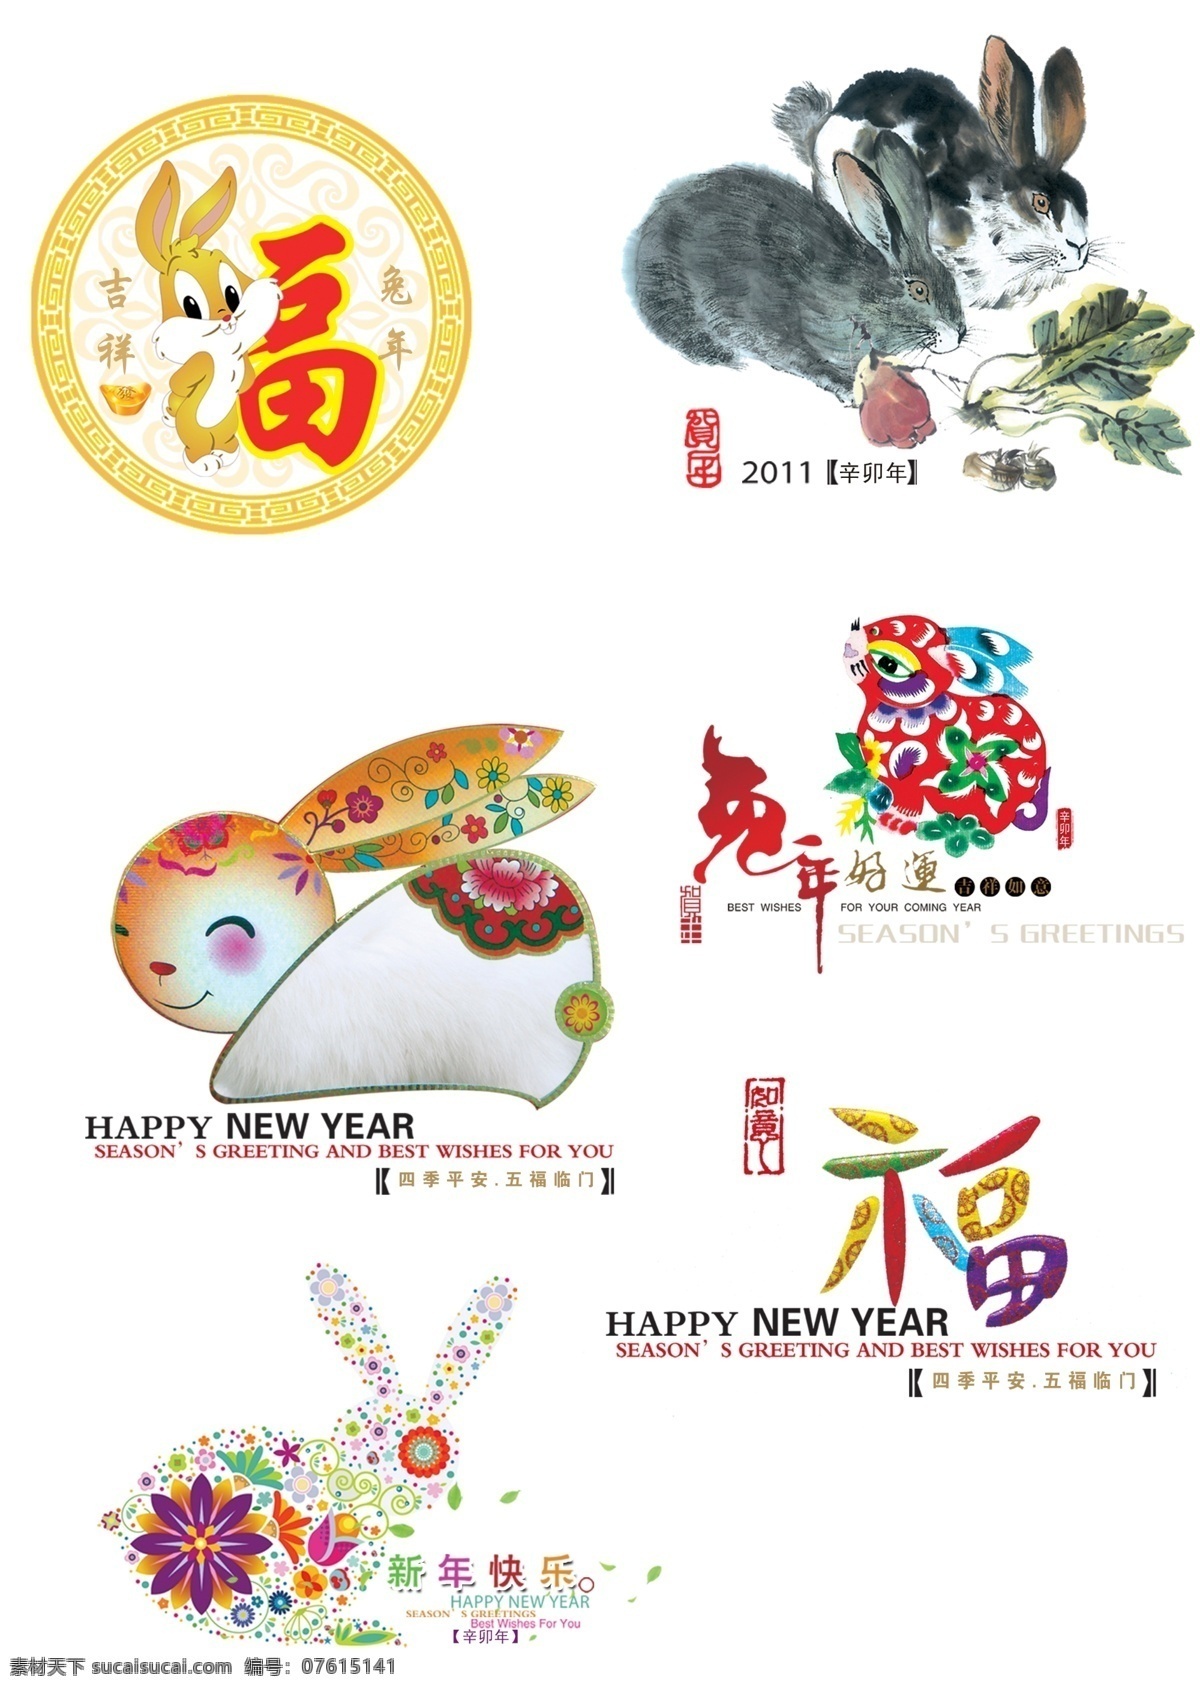 兔年新年素材 兔年 新年 卡通 微笑 水墨画 动物 兔子 小兔 福字 彩色 剪纸 好运 如意 文化艺术 节日庆祝